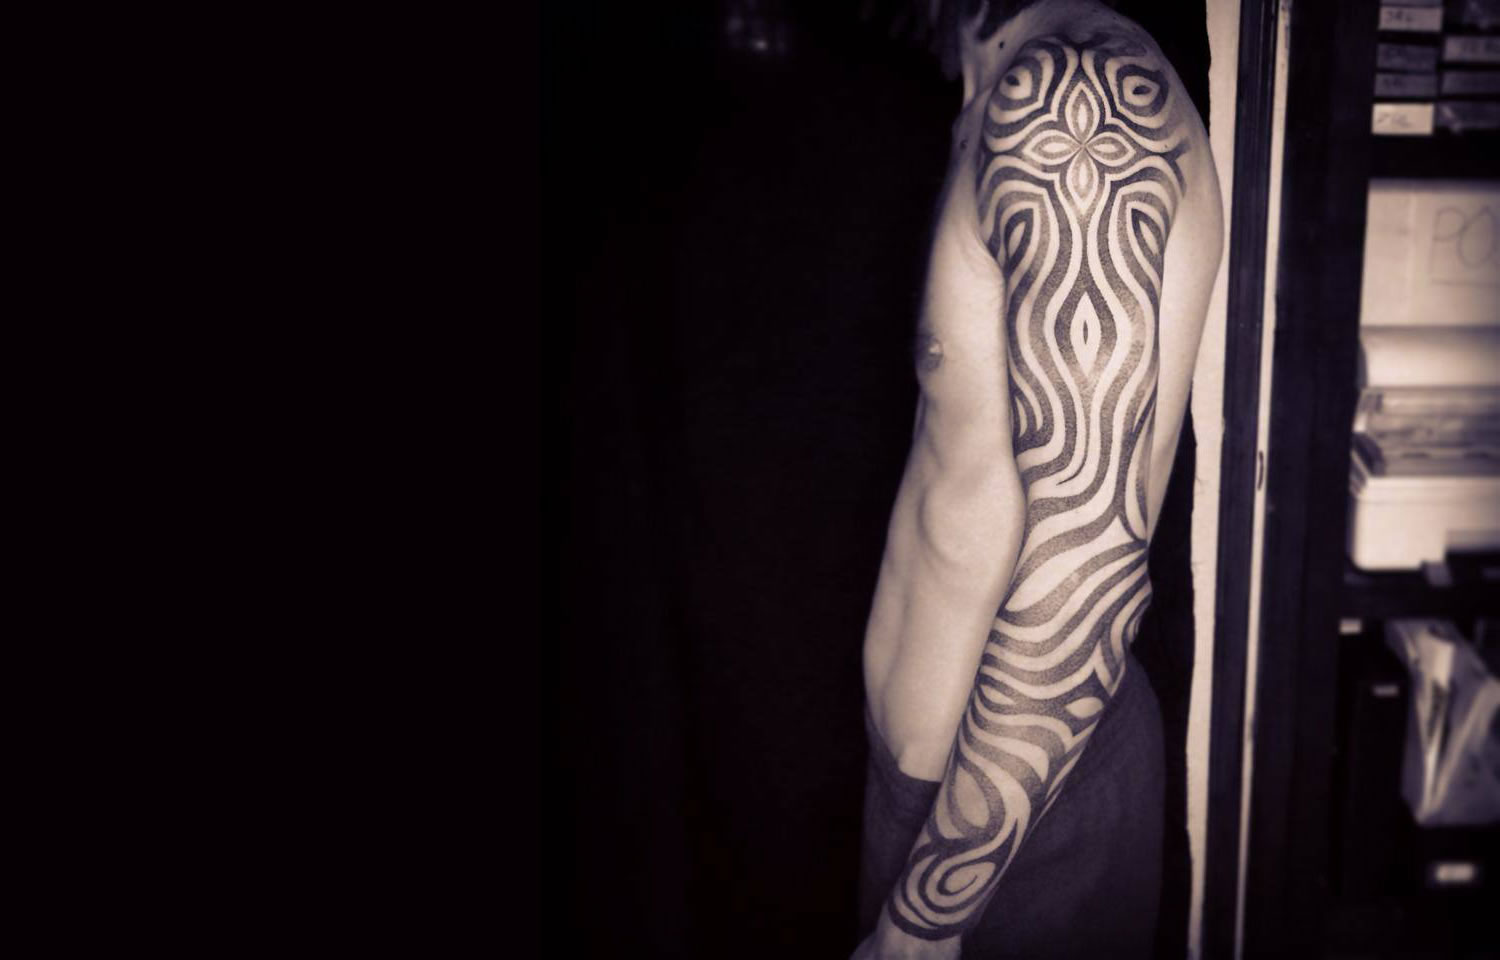 zebra patterns on arm, tattoo by jonny breeze